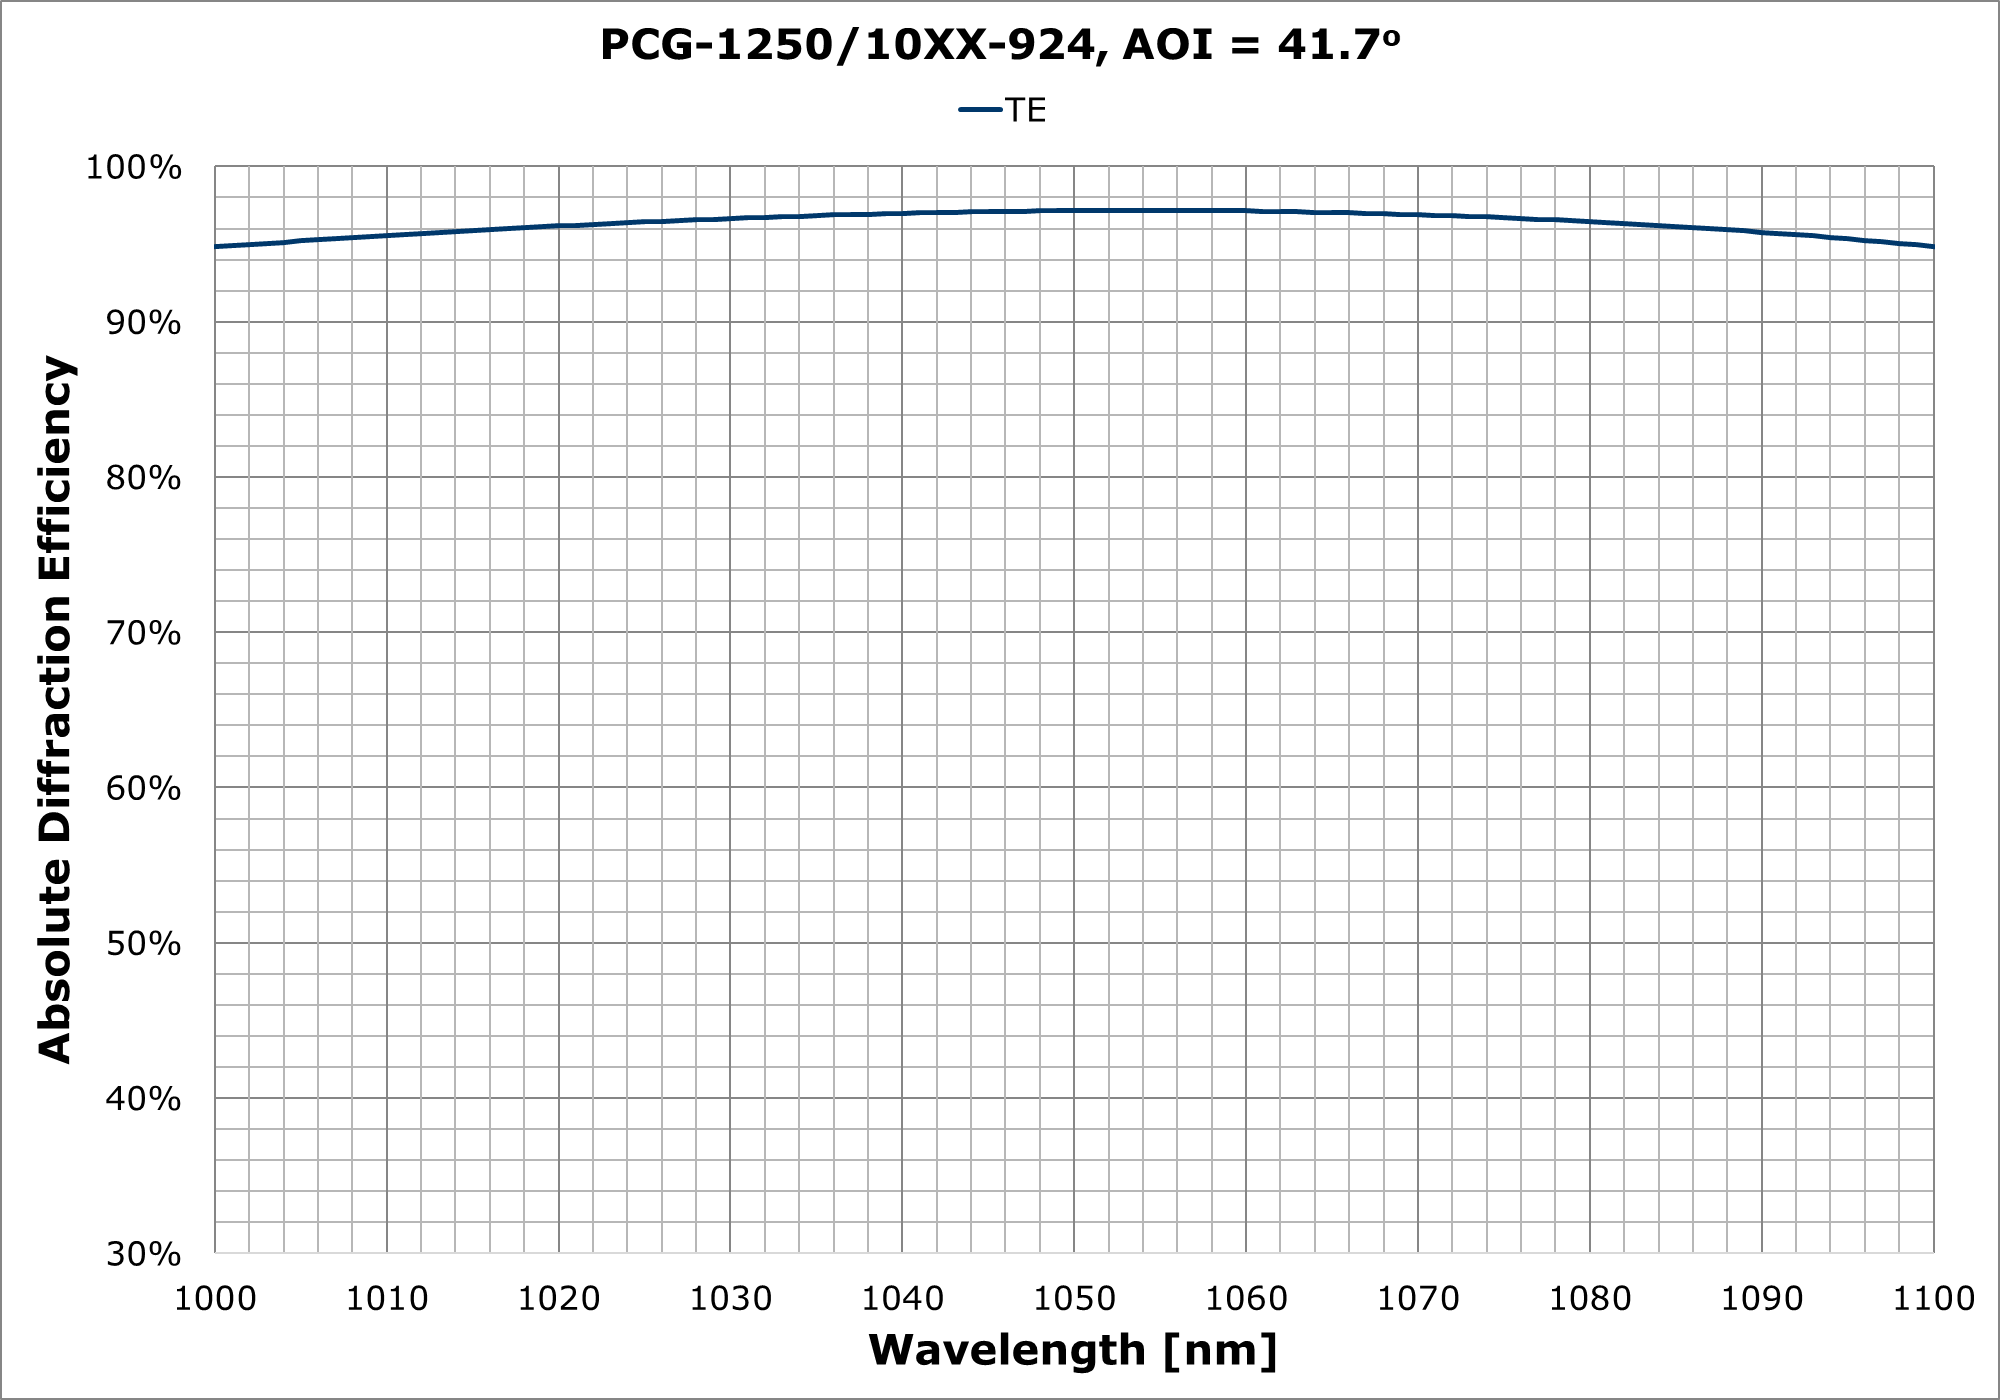 PCG-1250-10XX-924